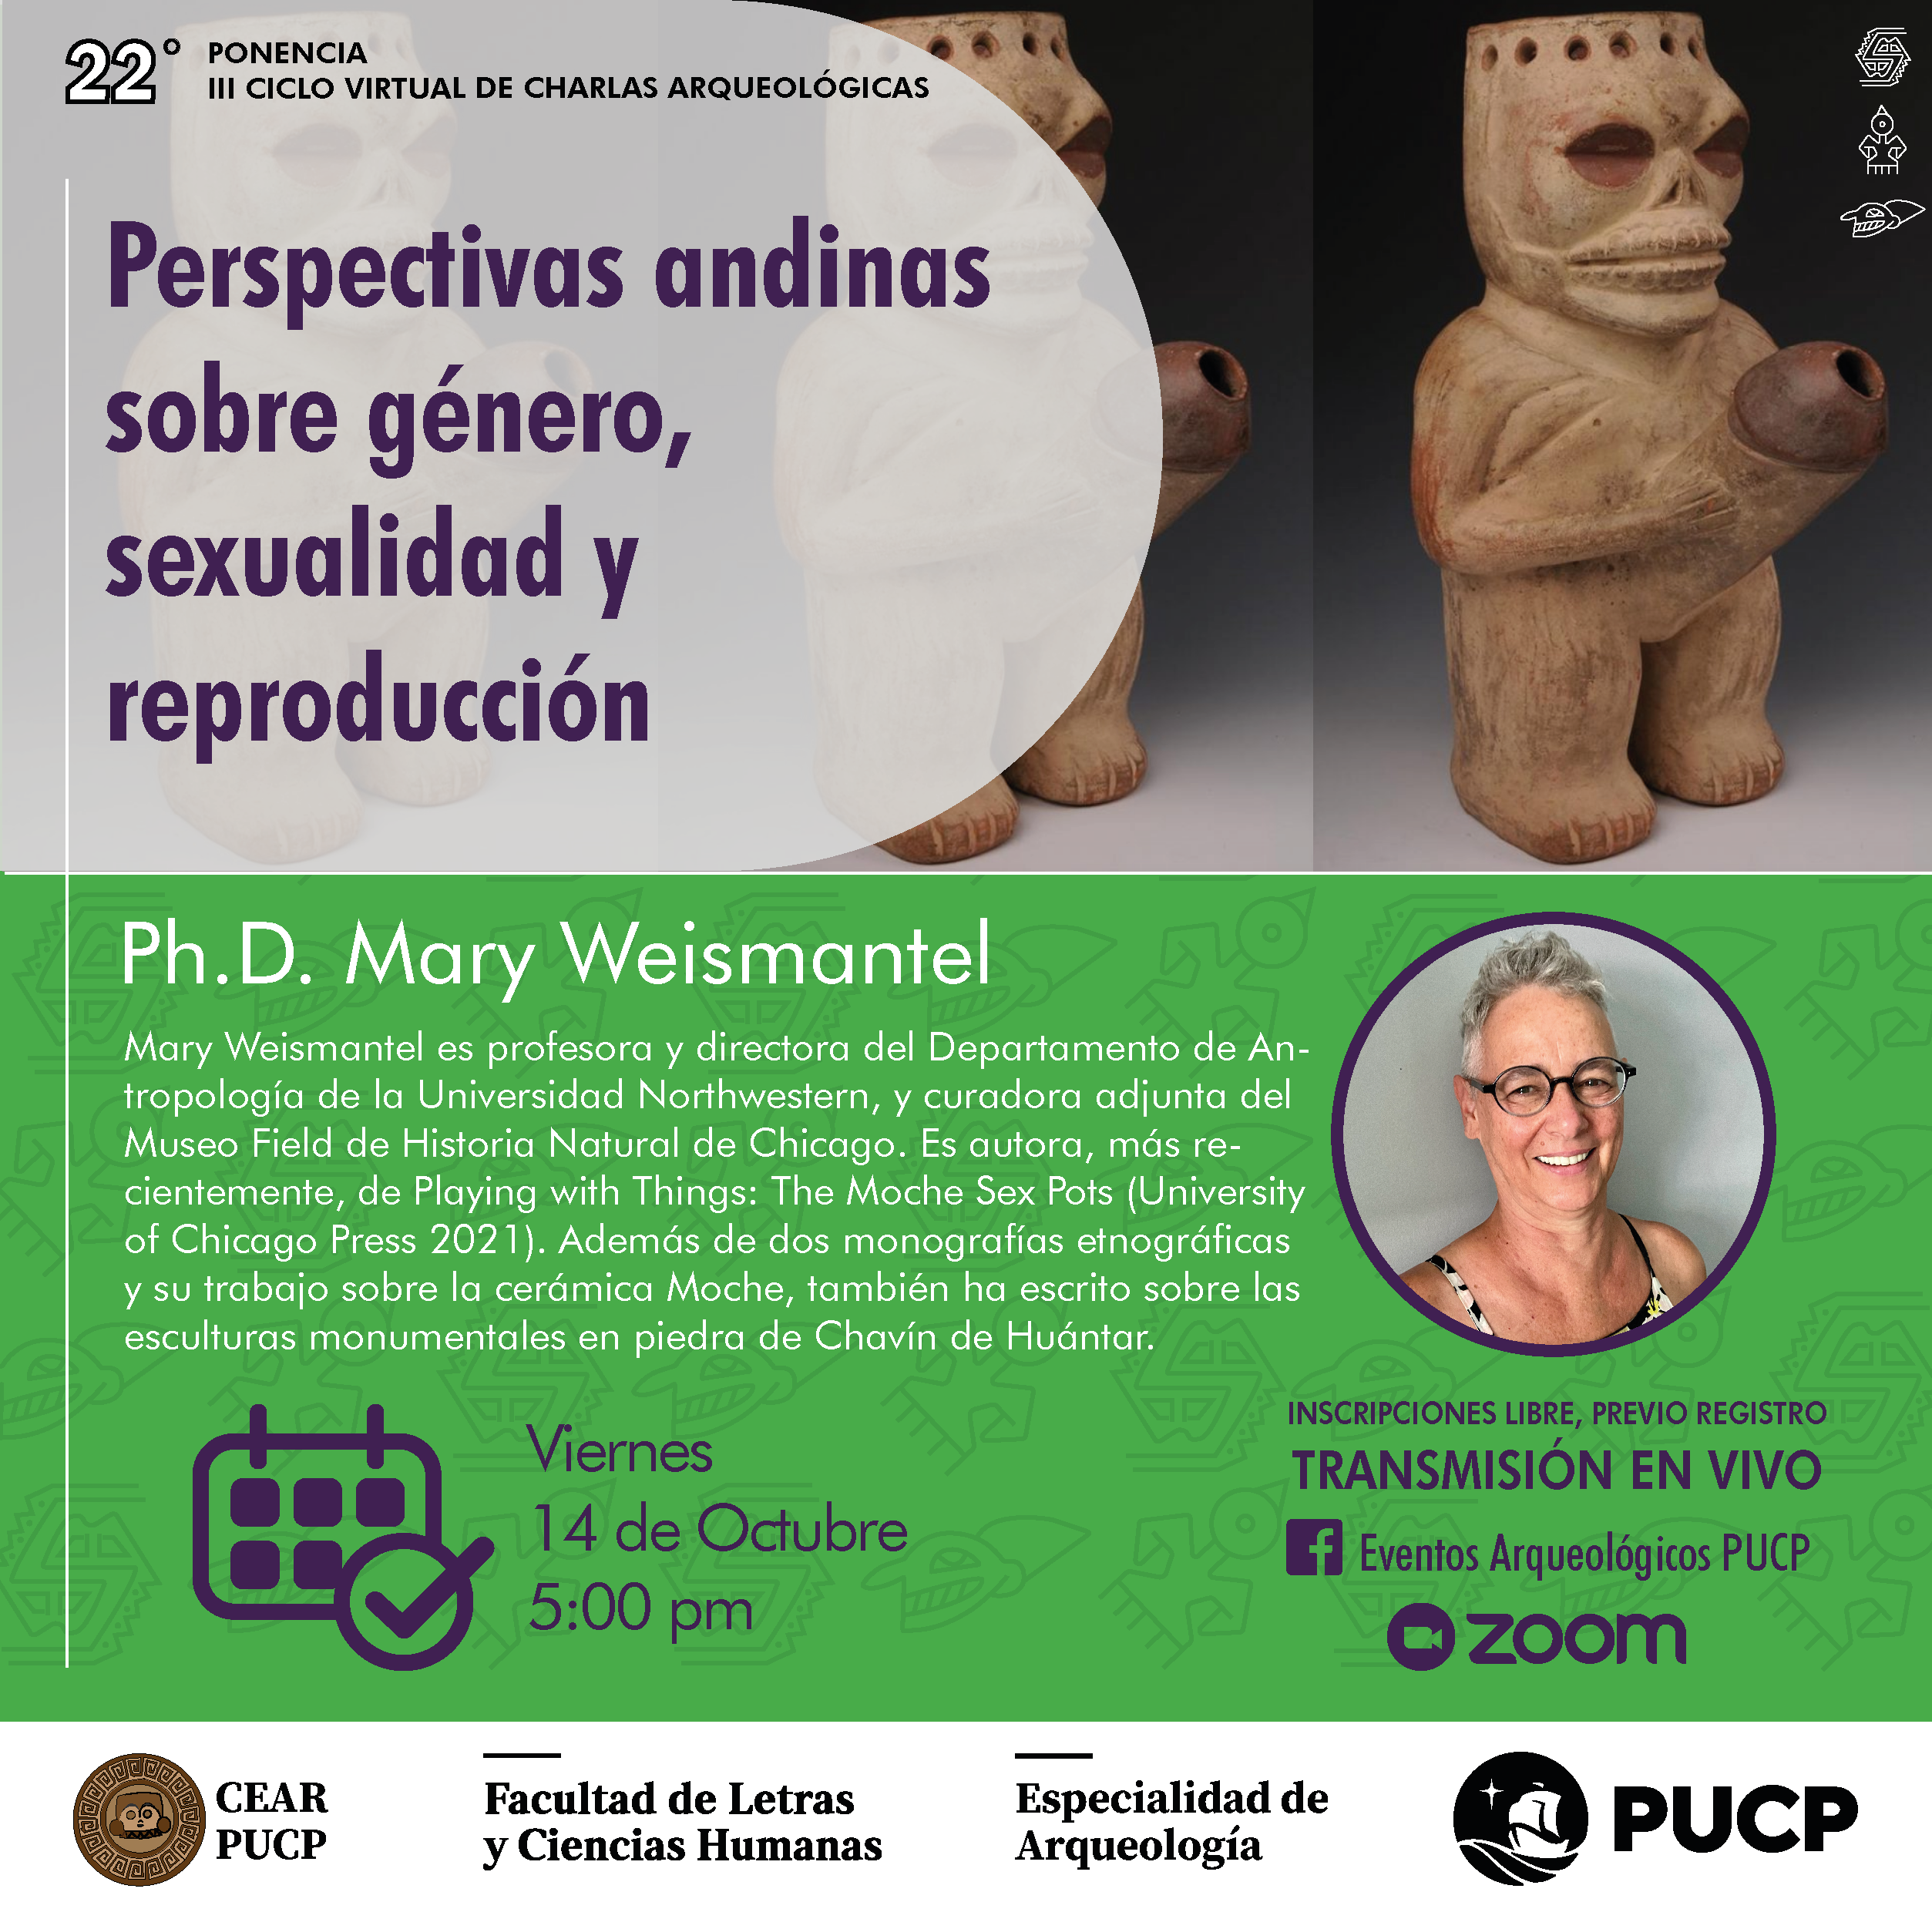 Conferencia | Perspectivas indígenas andinas sobre género, sexualidad y reproducción